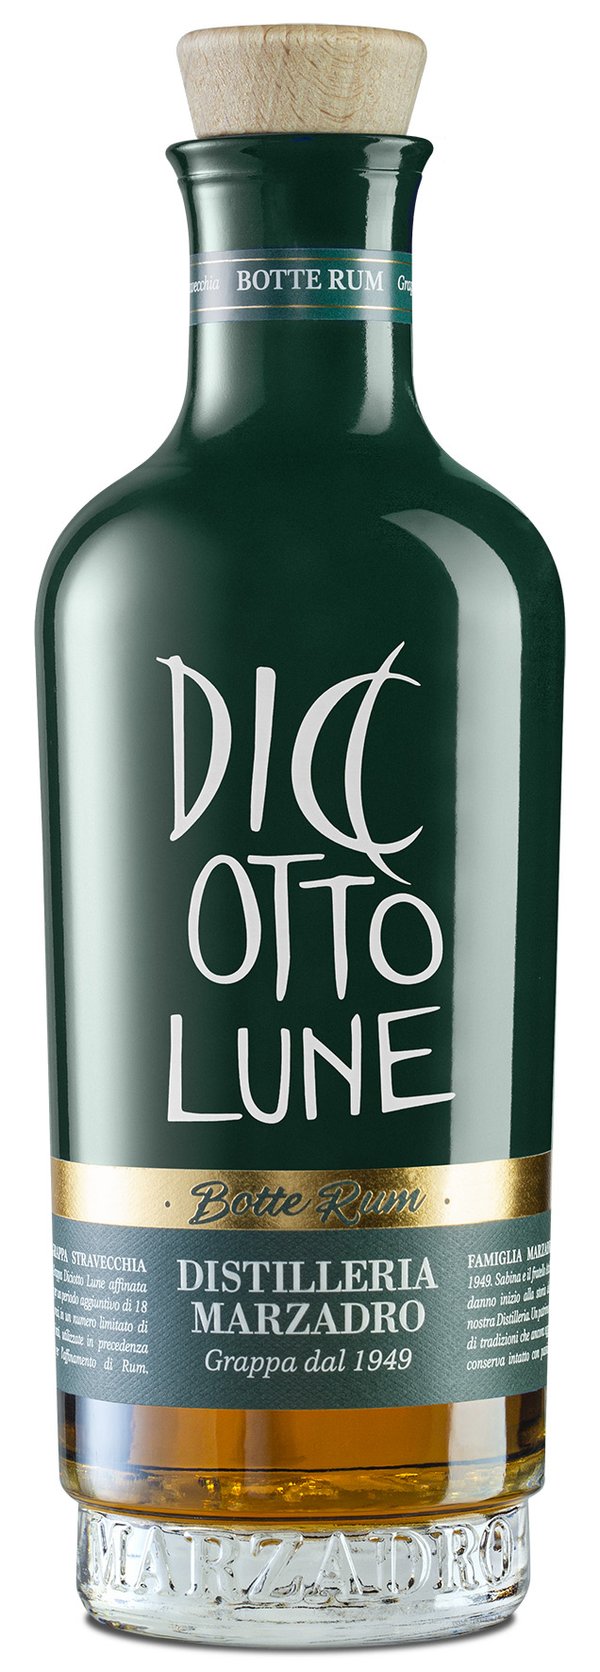 Diciotto Lune Grappa Stravecchia Riserva Botte Rum 0,2l 42% Vol. Marzadro